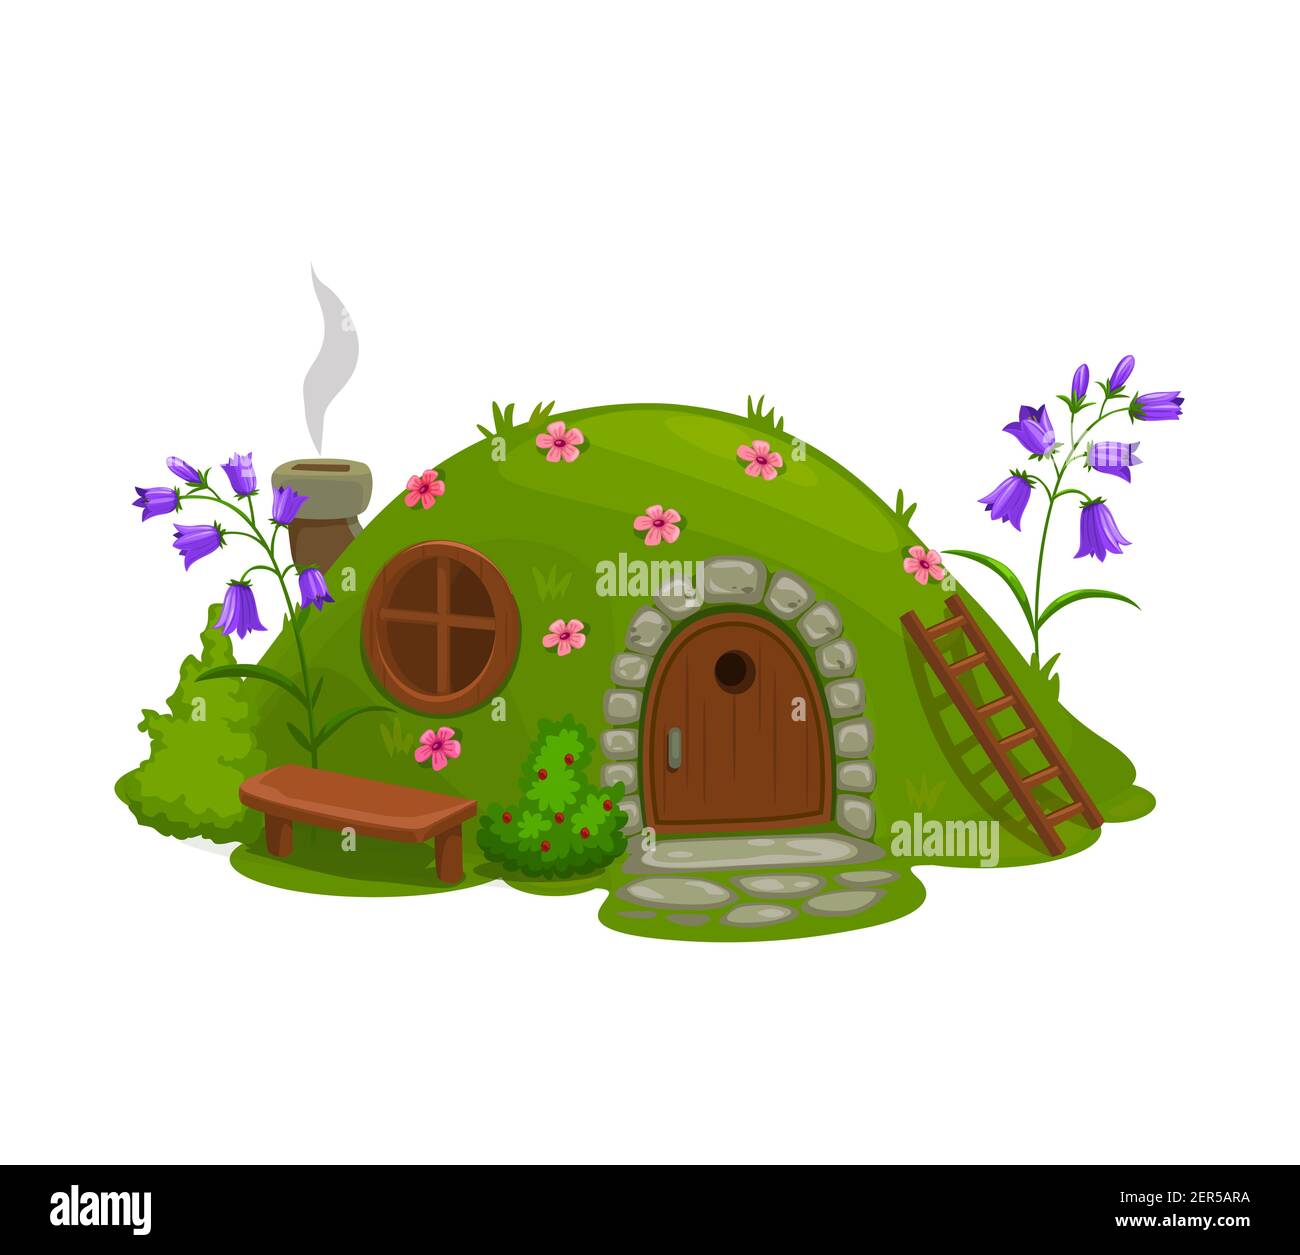 Zwerg oder Gnome Haus, Märchen Dugout Hütte Cartoon-Vektor. Feen oder magische Kreatur zu Hause in Hügel, bedeckt Gras und Blumen Loch, Hütte mit Holzdoo Stock Vektor